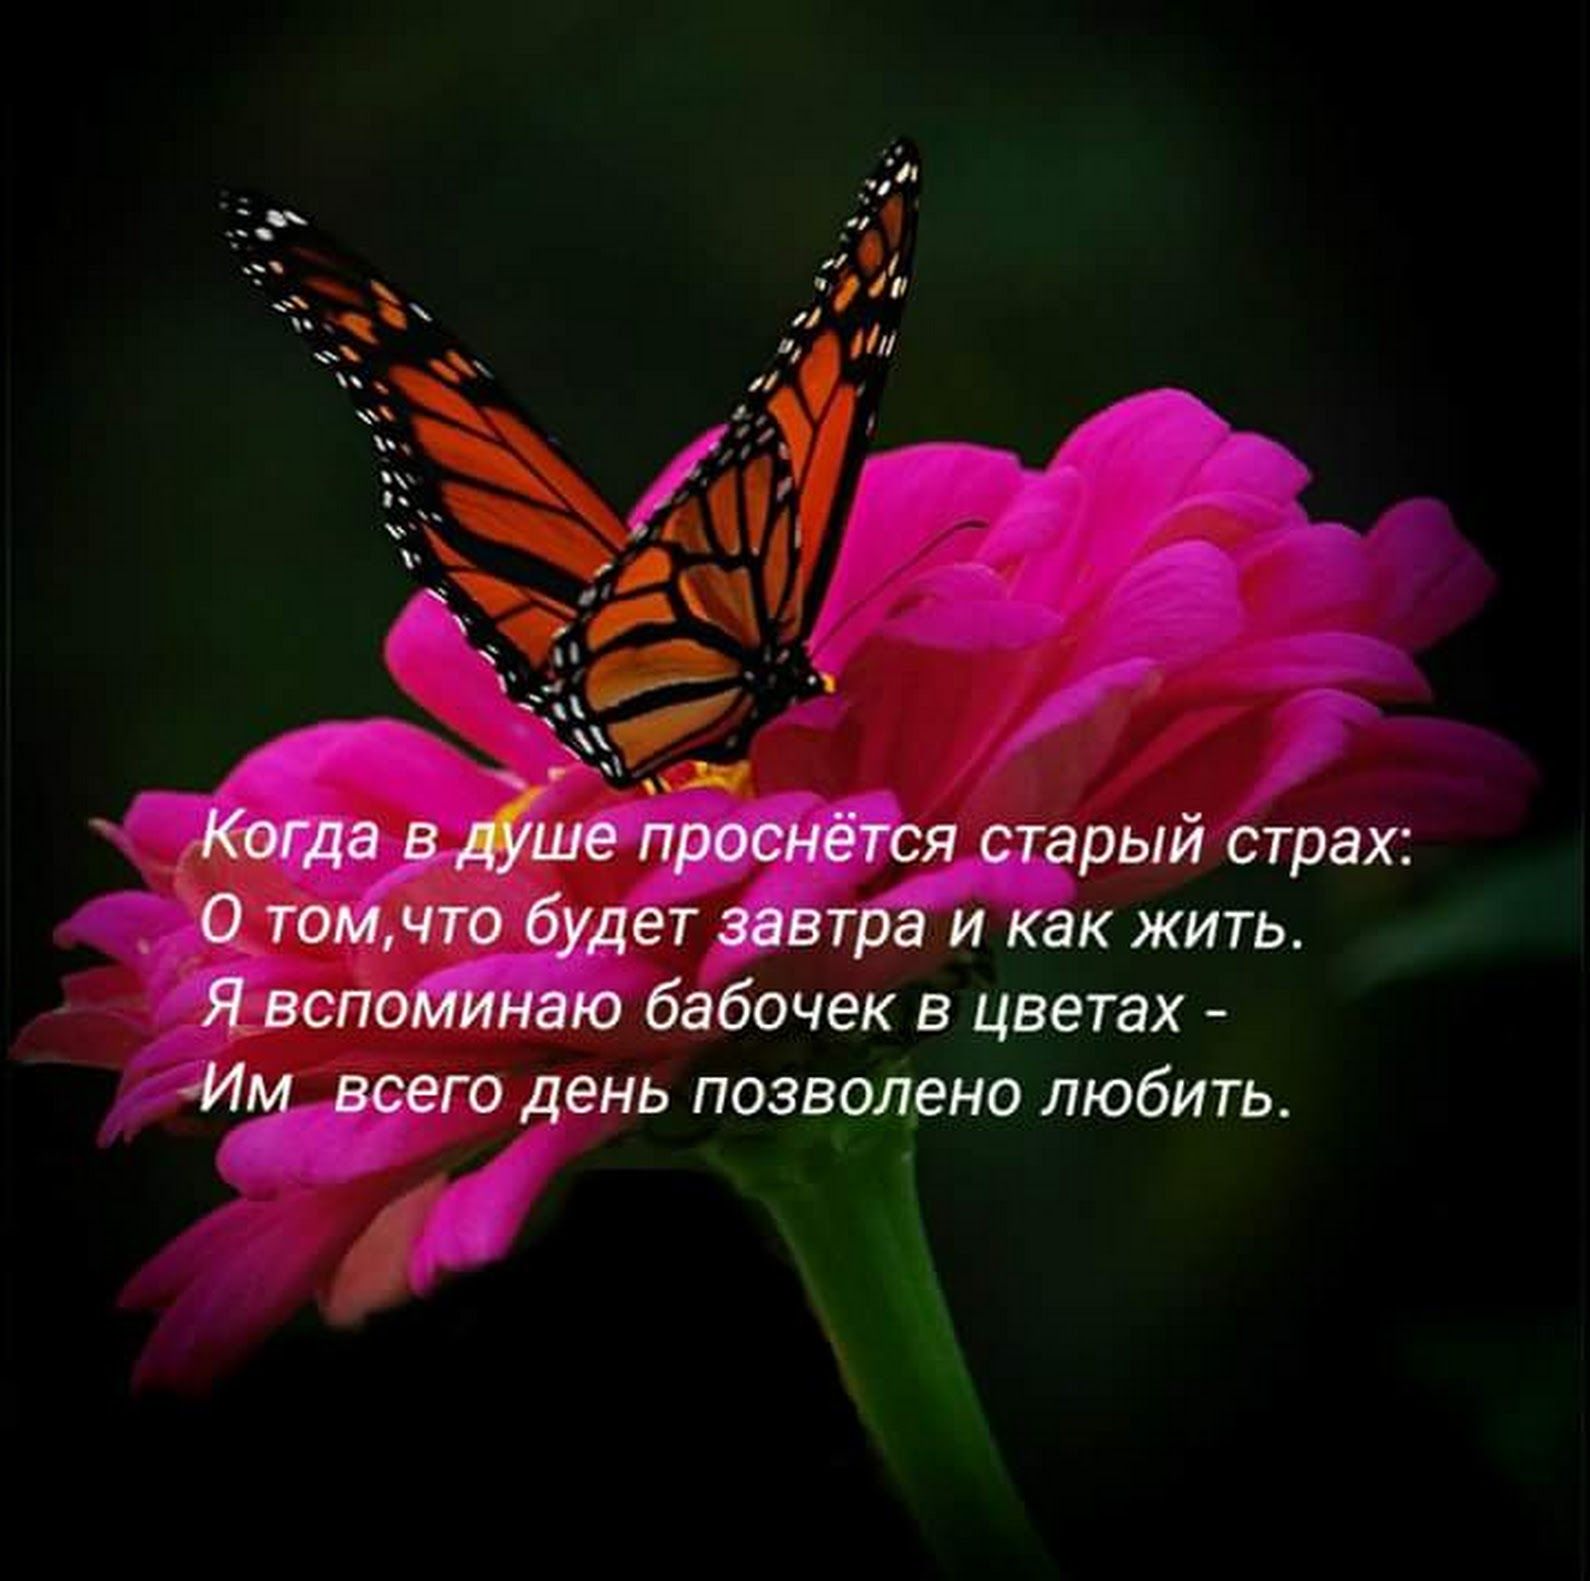 5dd0a912b5e89 - Афоризмы про бабочек